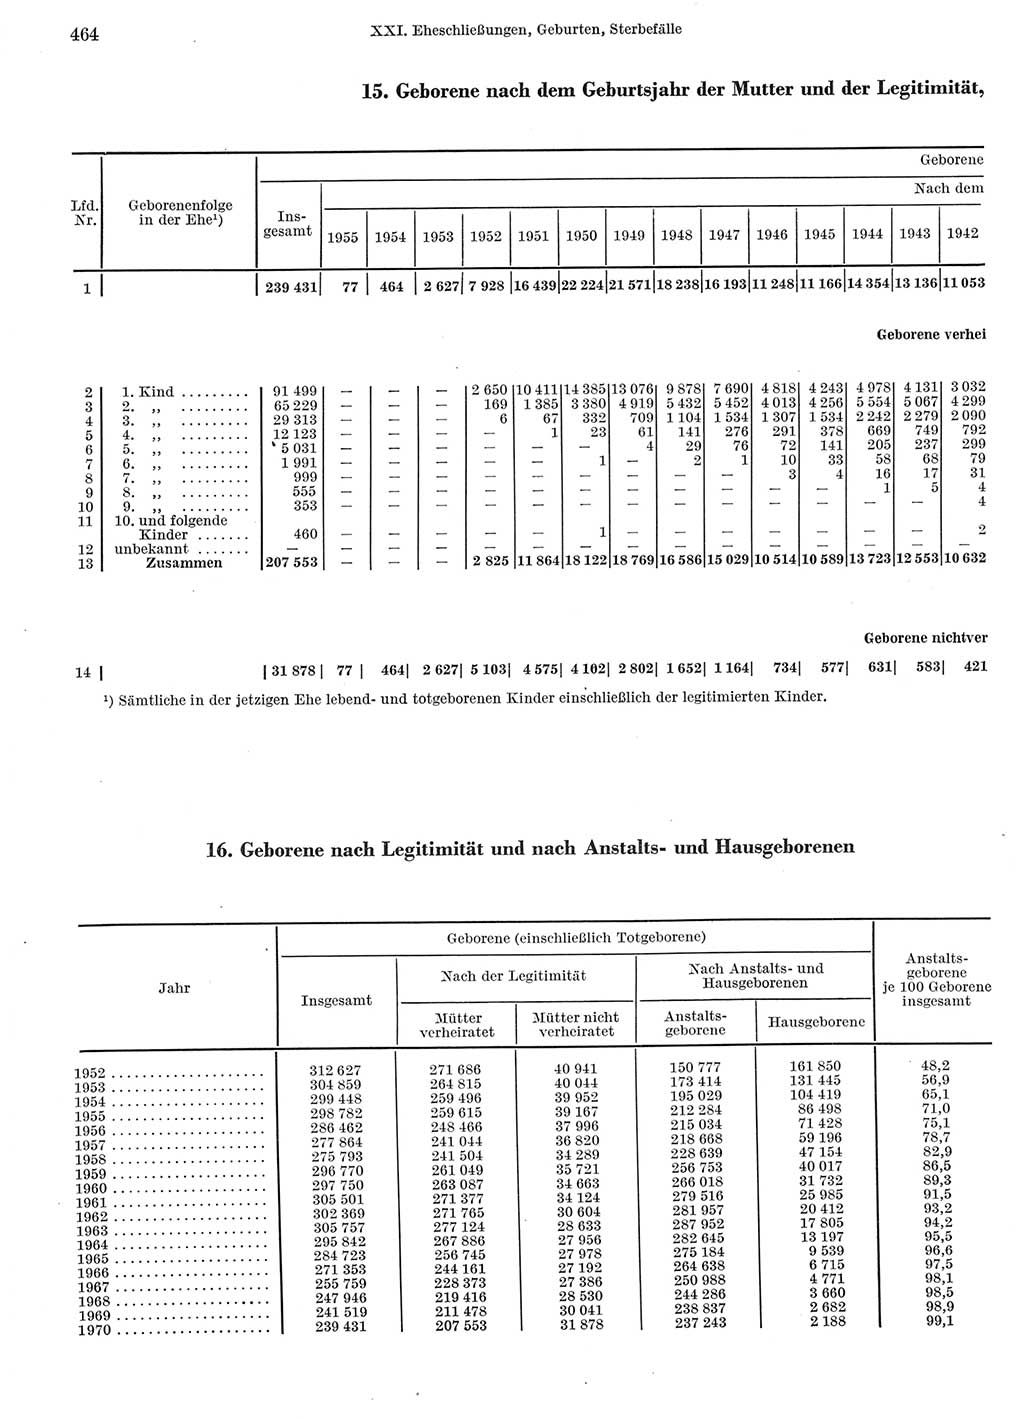 Statistisches Jahrbuch der Deutschen Demokratischen Republik (DDR) 1972, Seite 464 (Stat. Jb. DDR 1972, S. 464)